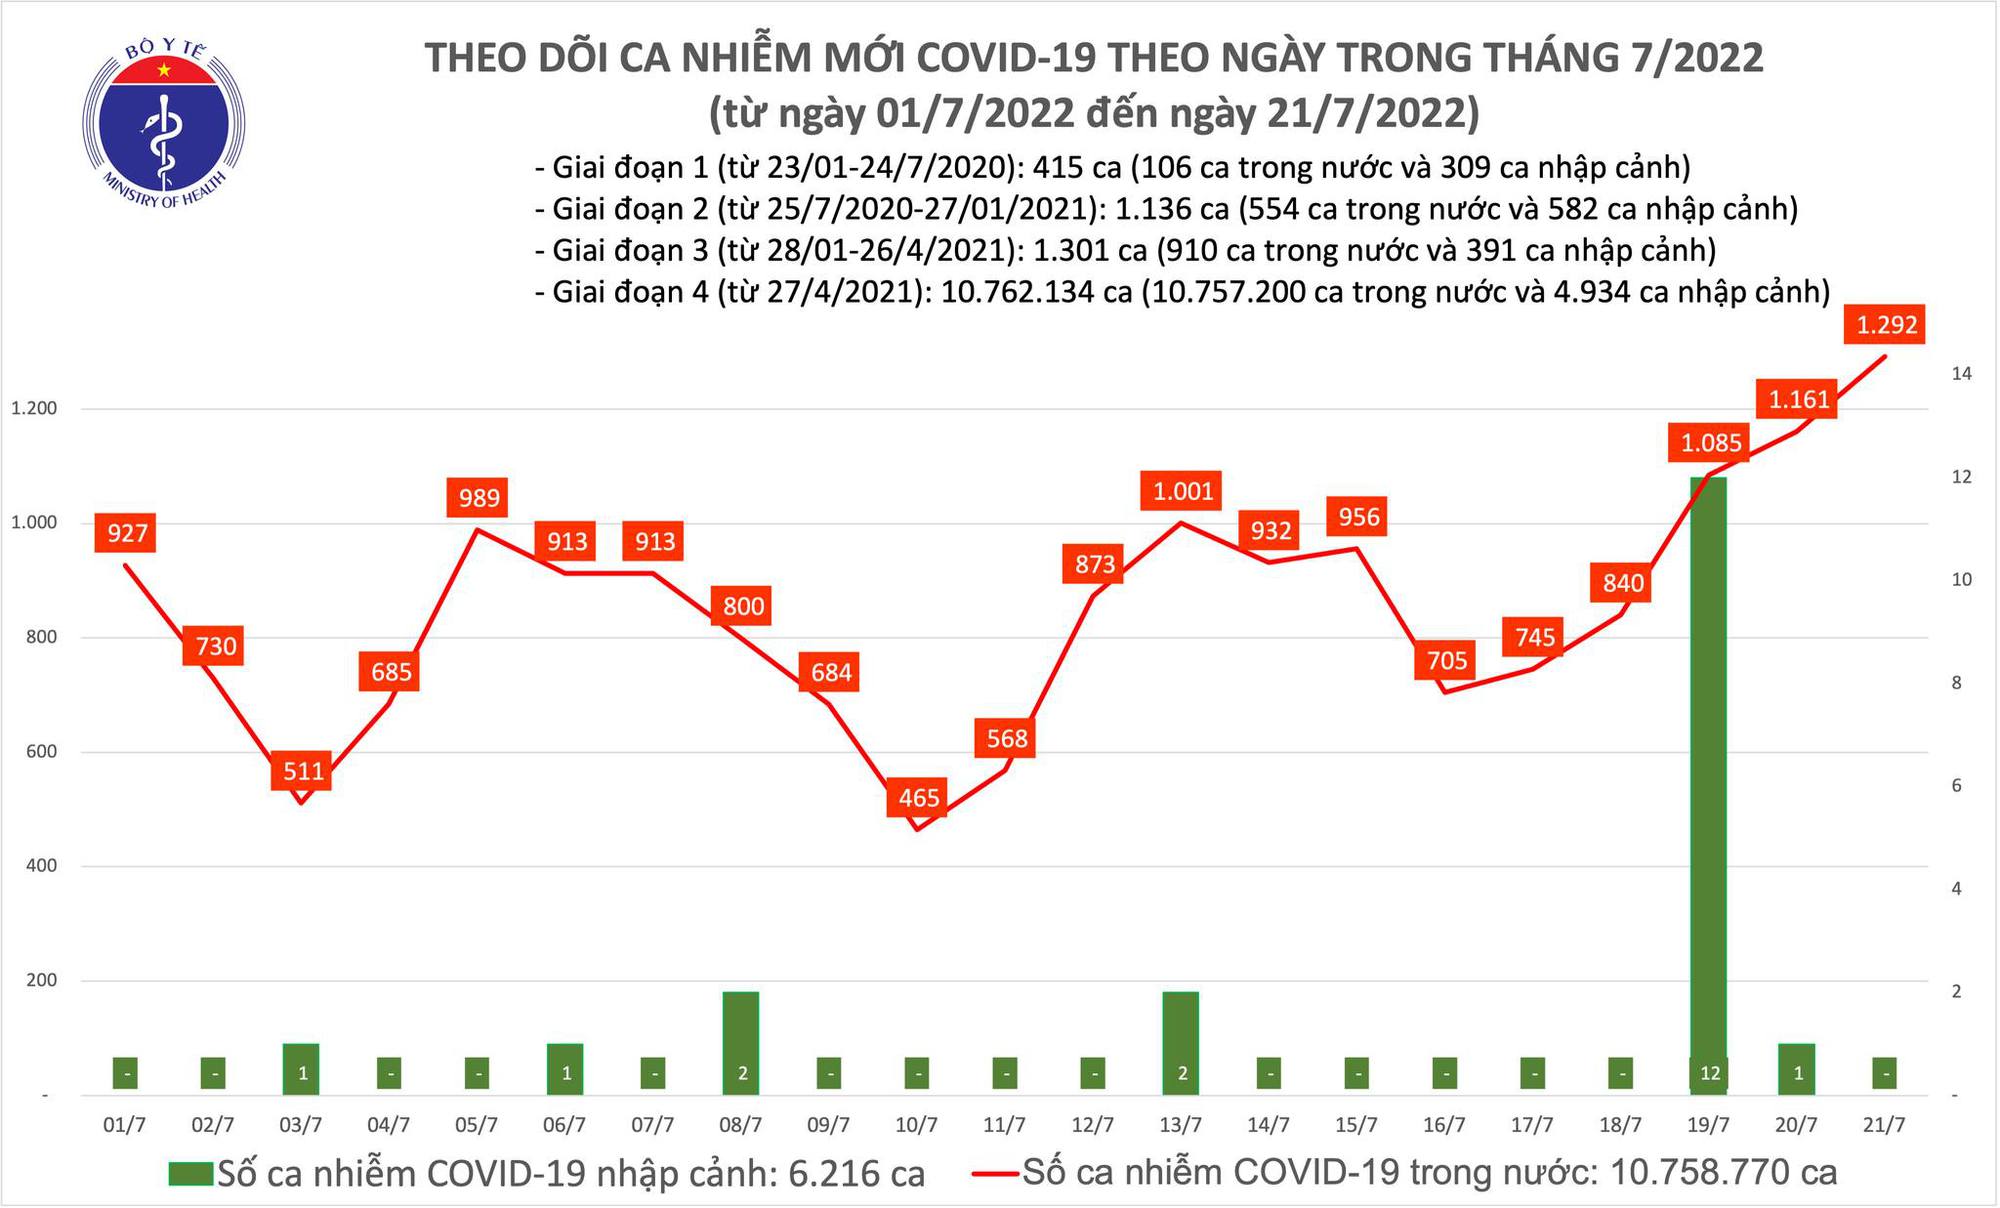 Ngày 21/7: Có gần 1.300 ca COVID-19 mới, cao nhất trong hơn 1,5 tháng qua - Ảnh 1.